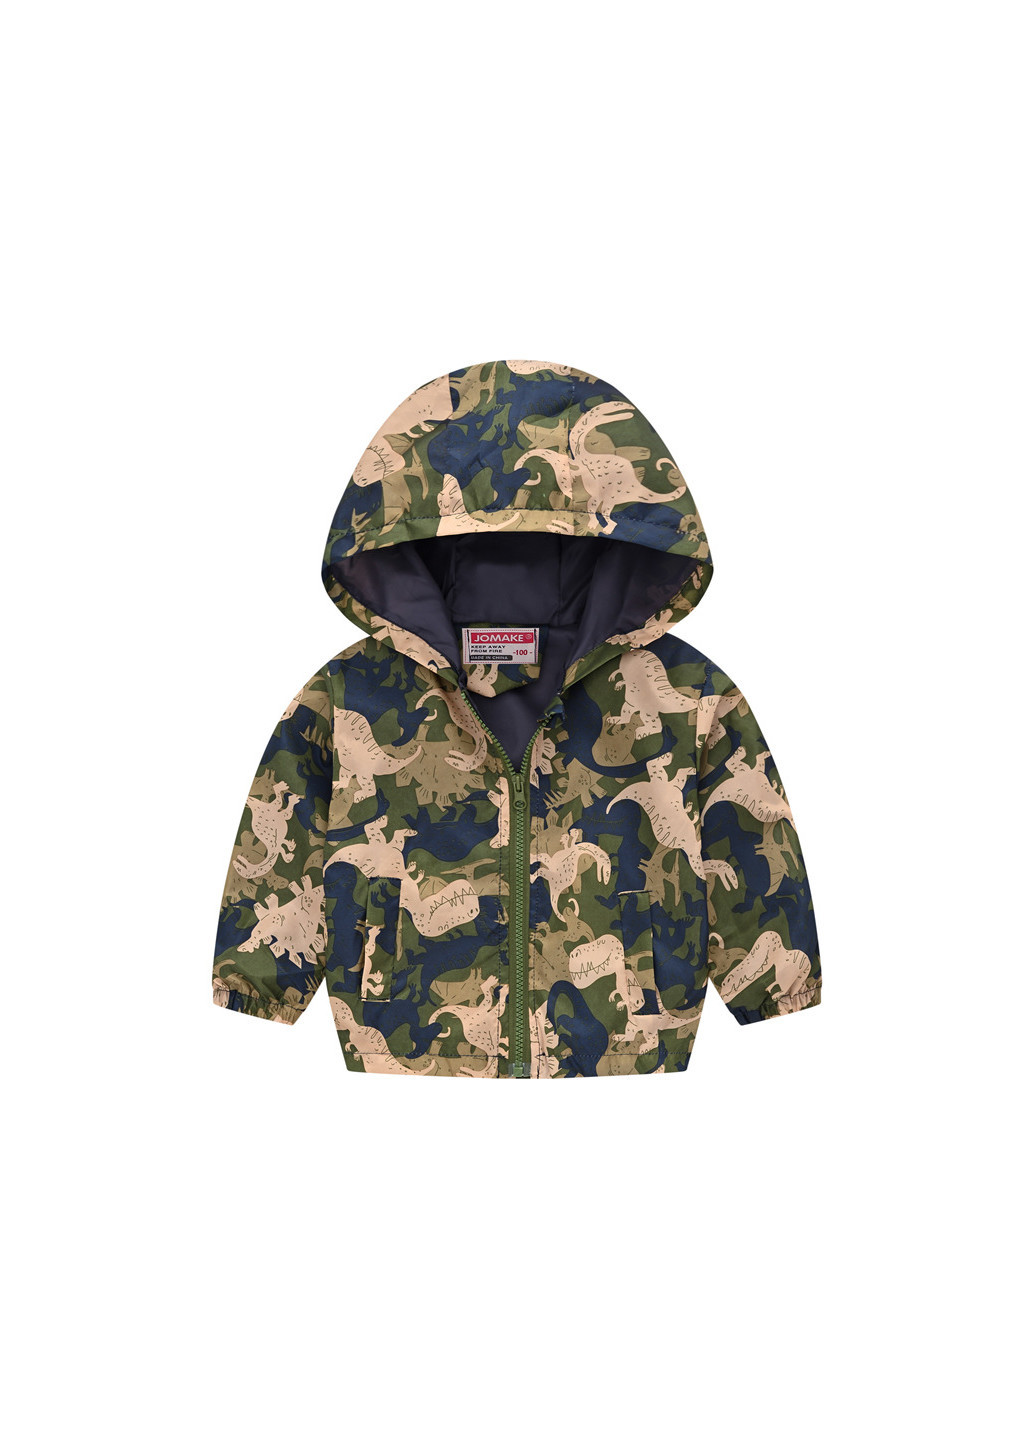 Оливковая (хаки) демисезонная куртка-ветровка для мальчика хищные динозавры Jomake 53880